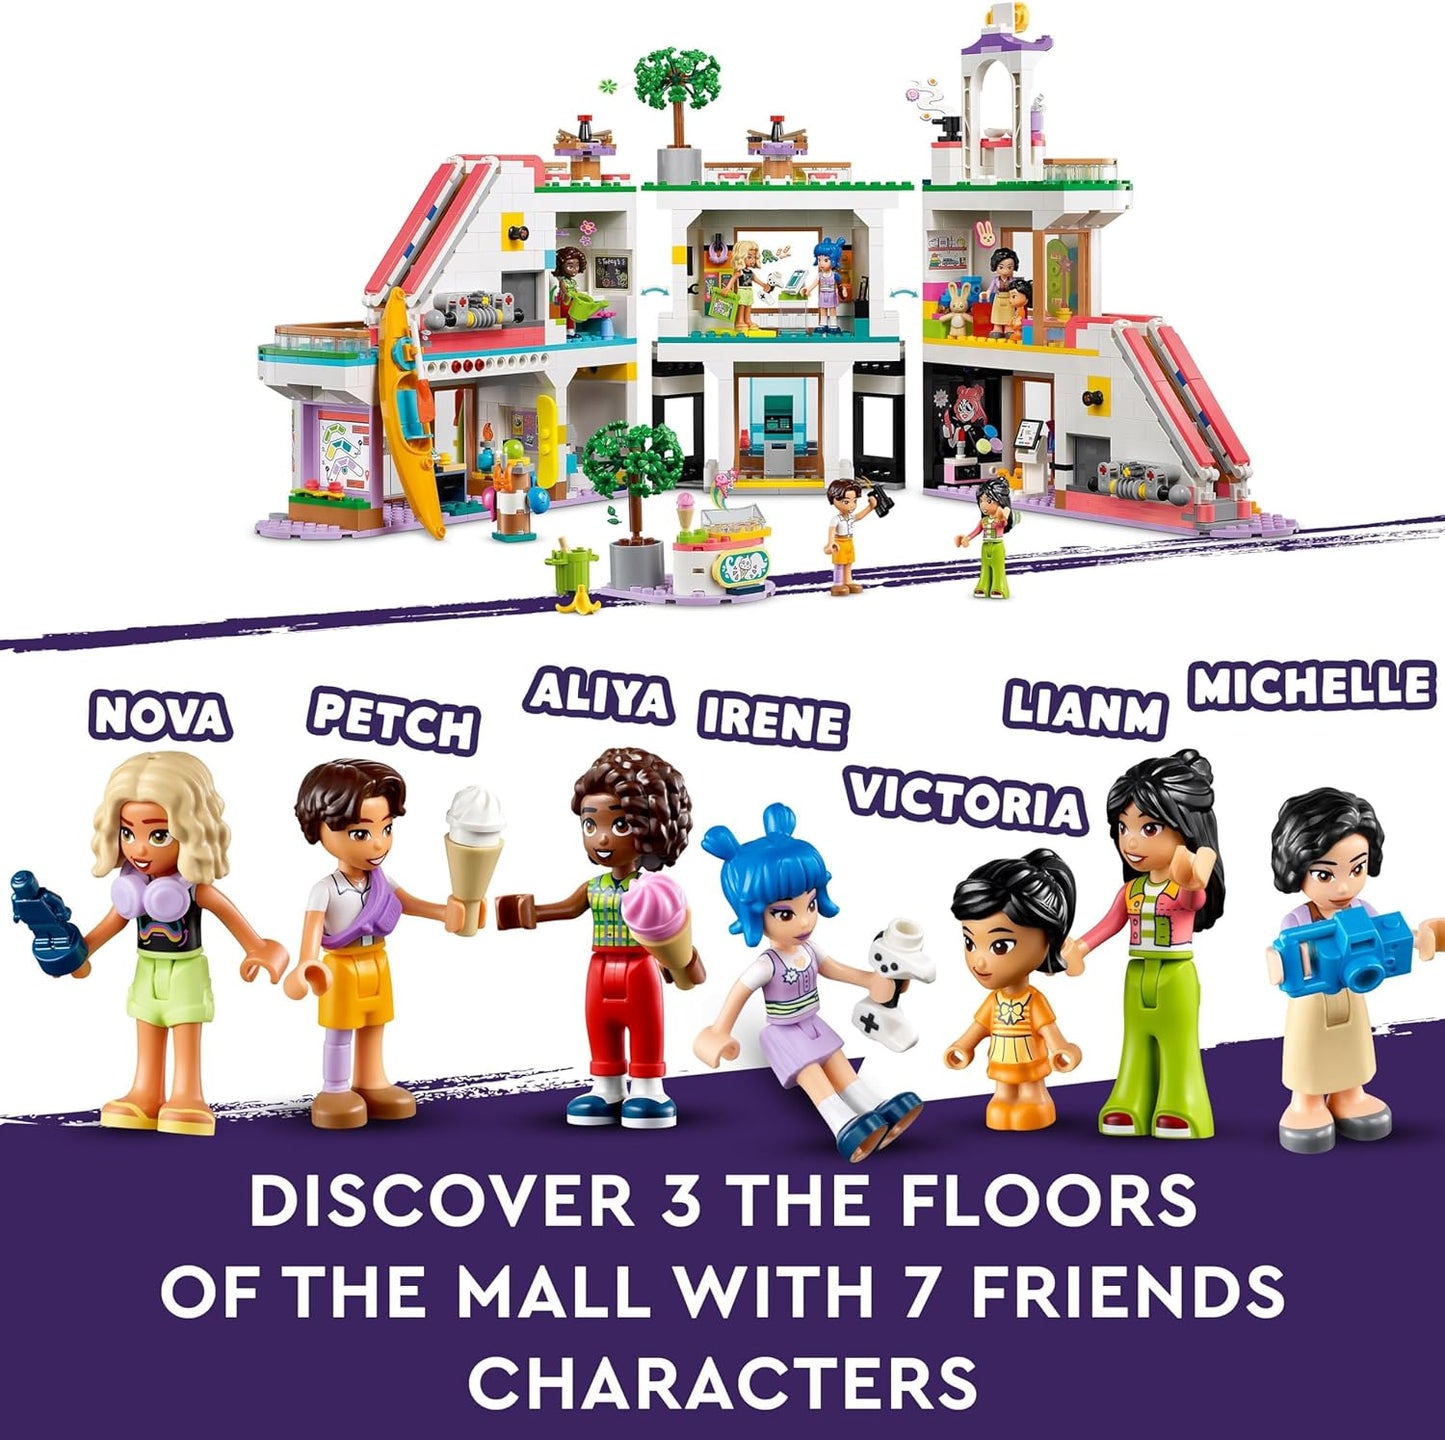 LEGO Friends Heartlake City Shopping Mall com 5 lojas de brinquedos para meninas, meninos e crianças a partir de 8 anos, brinquedos de dramatização, apresenta 7 personagens de minibonecas, ideia de presente de aniversário 42604